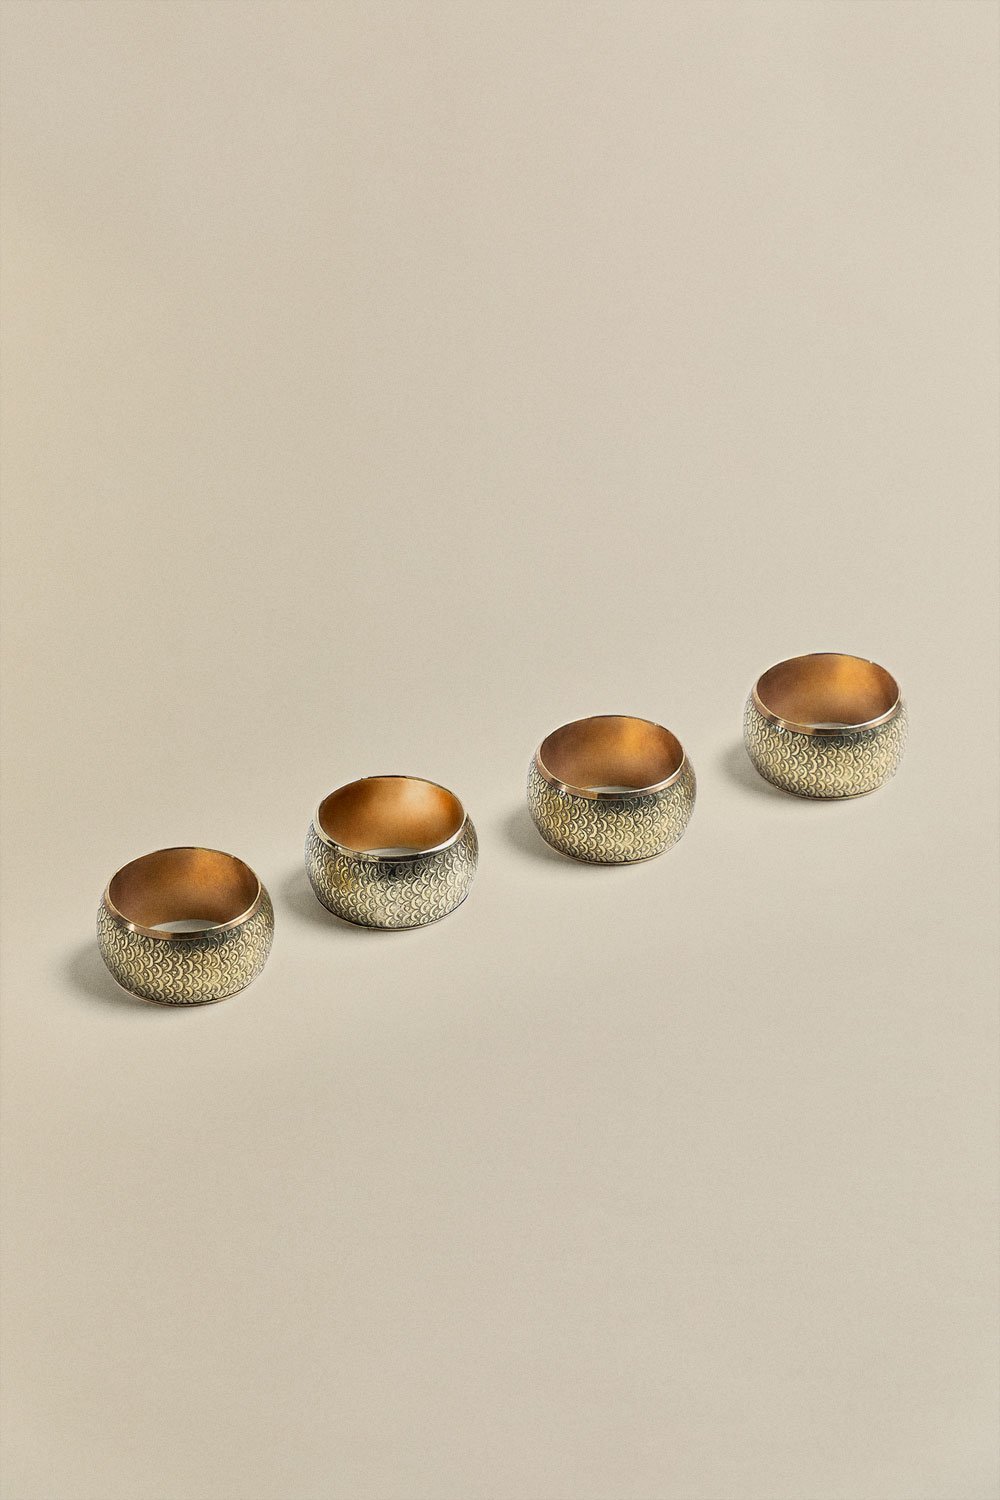 Set van 4 metalen servetringen Zauli, galerij beeld 1